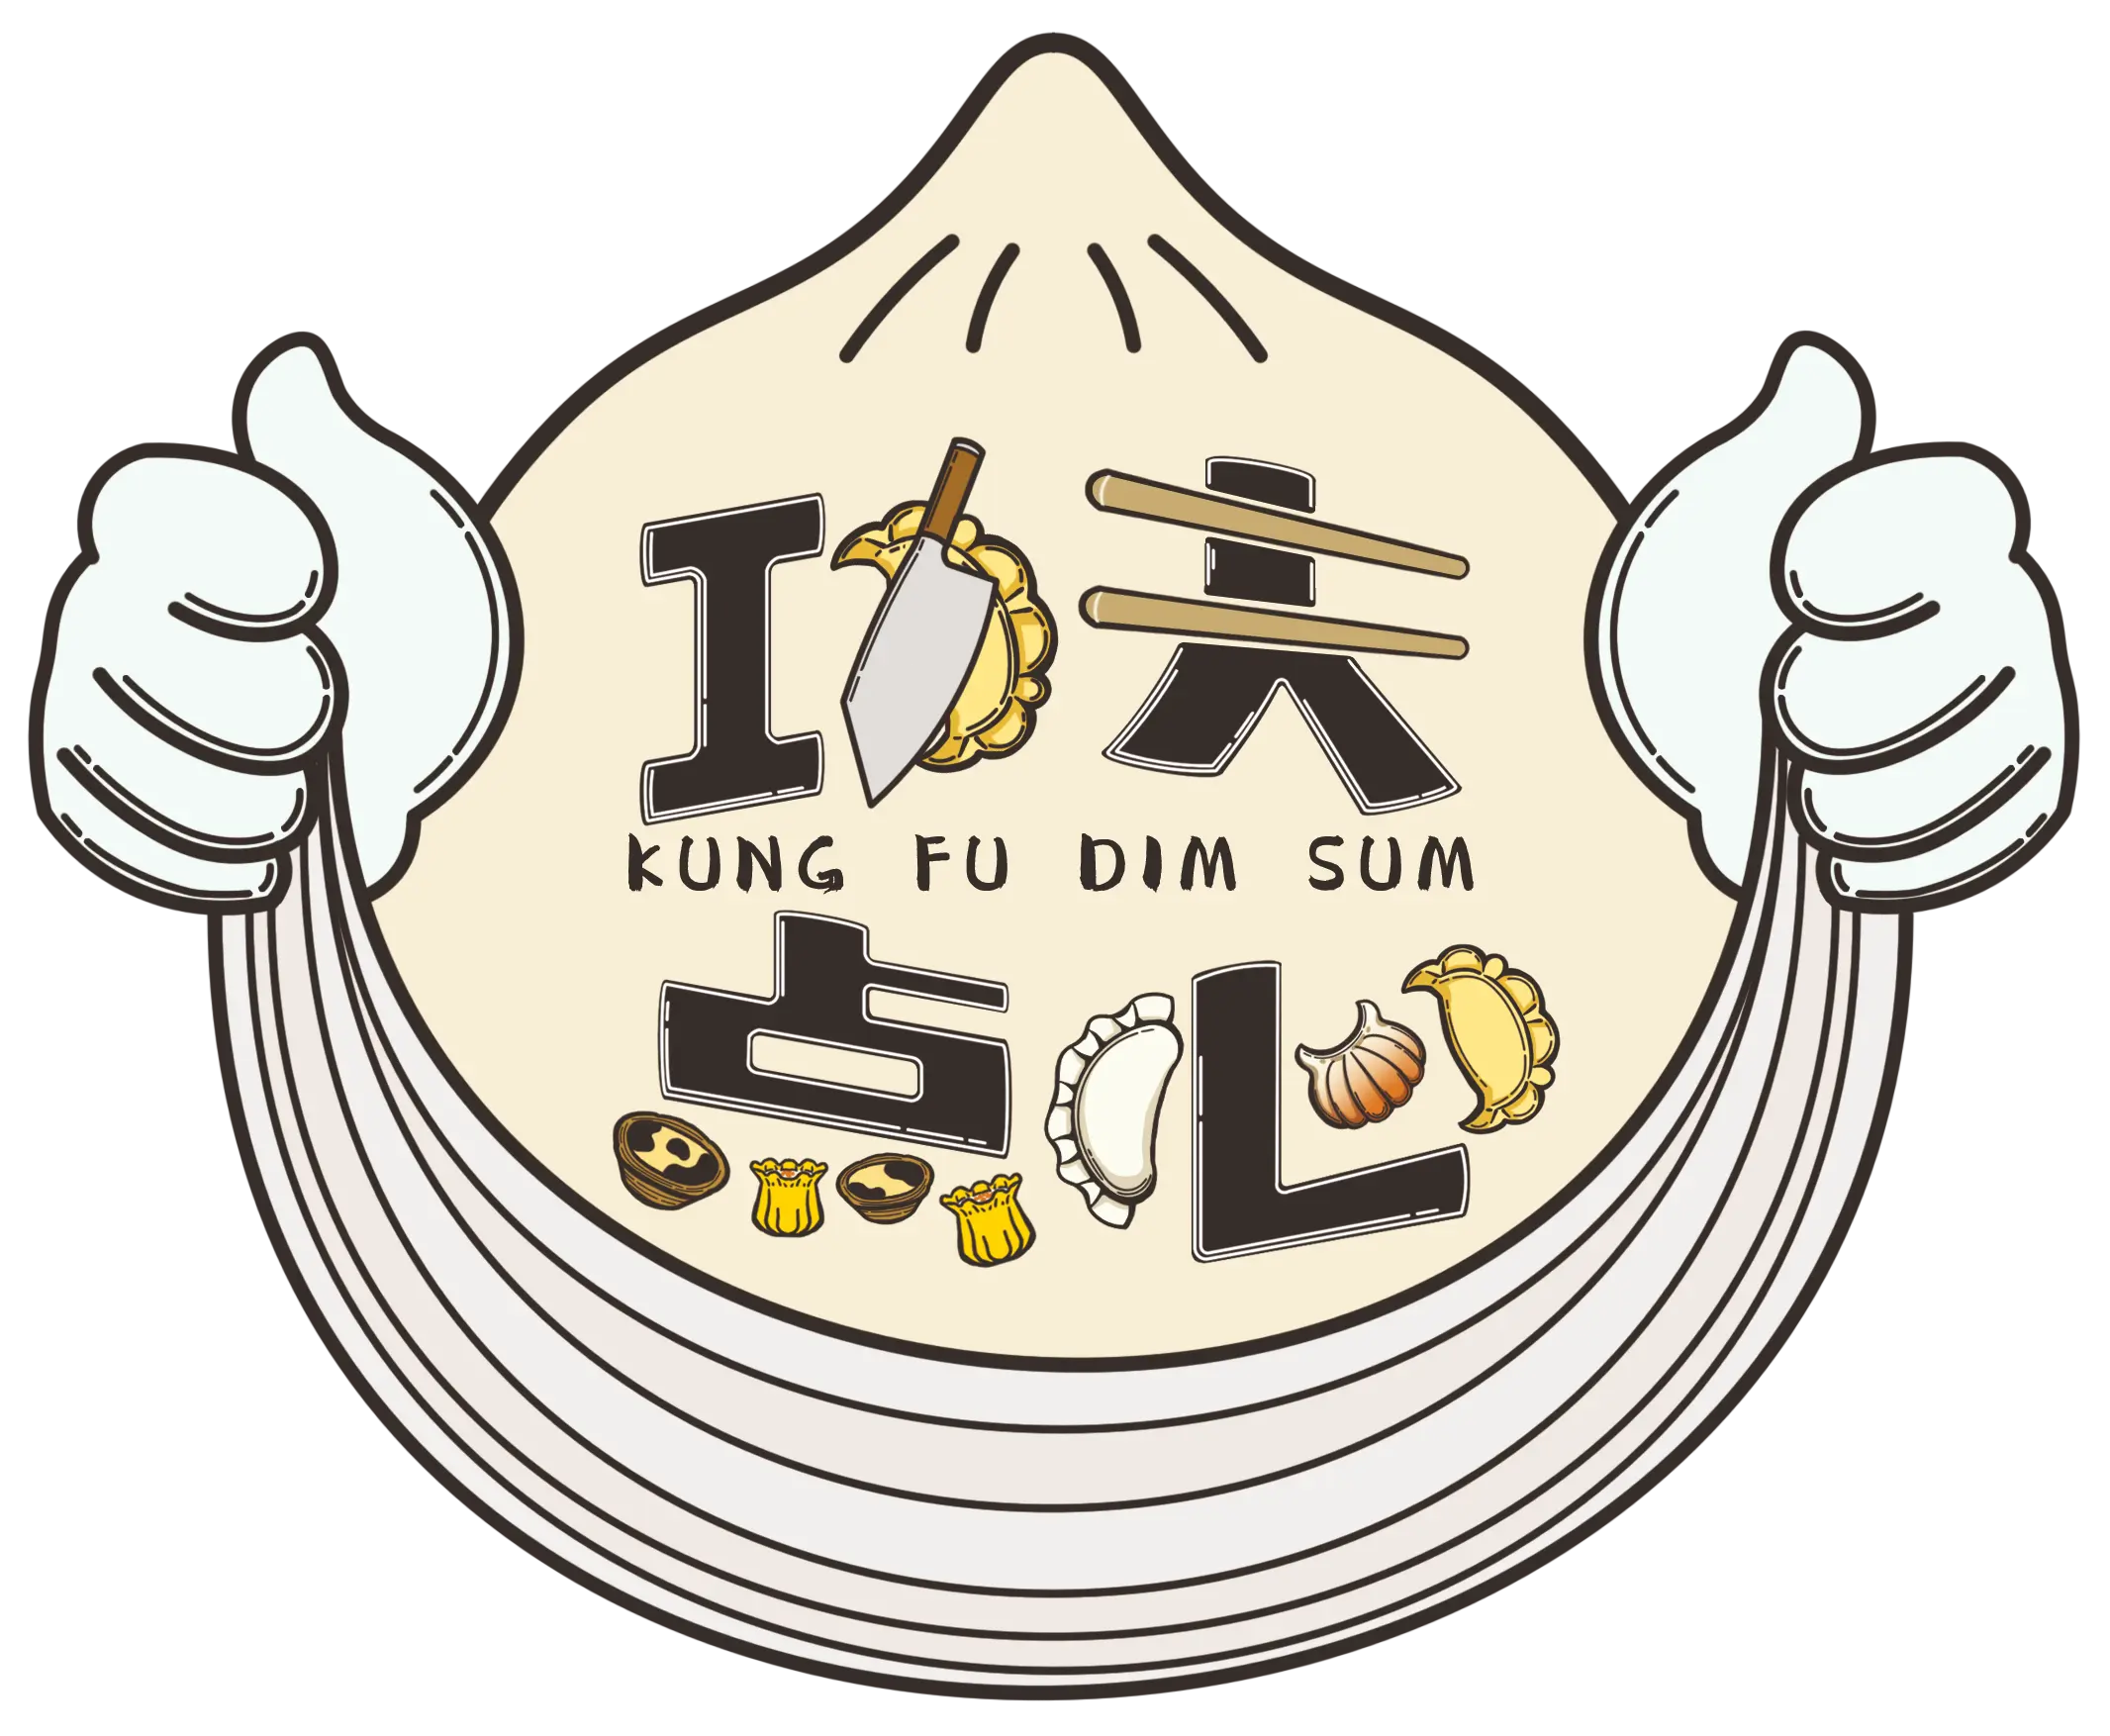 Kung Fu Dim Sum